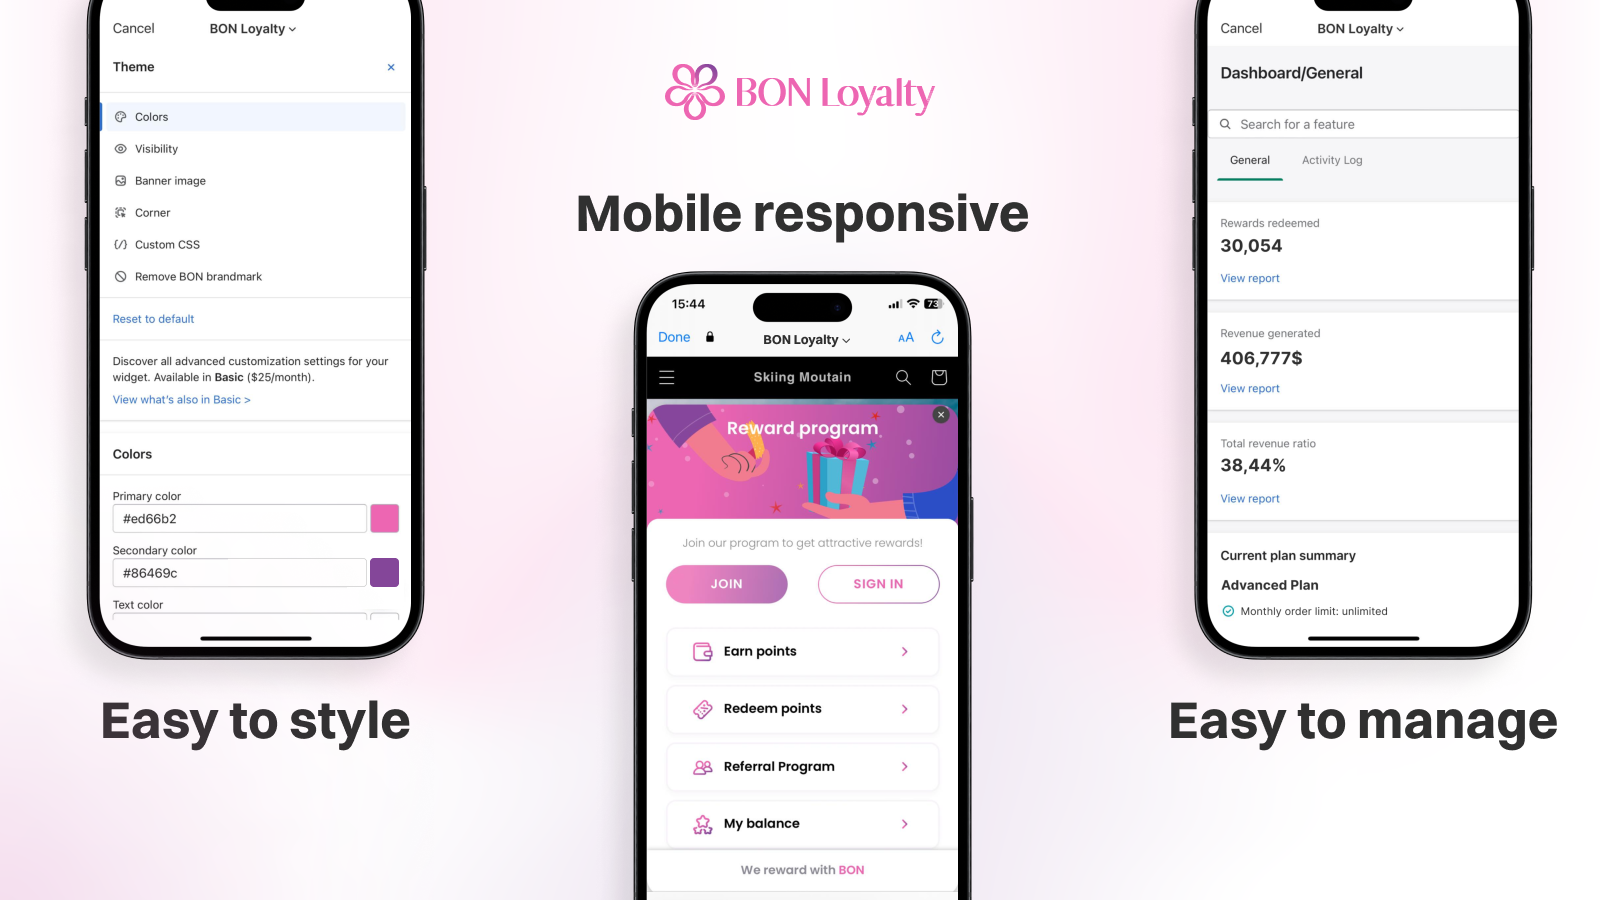 BON Loyalty biedt een mobiel-responsieve gebruikersinterface